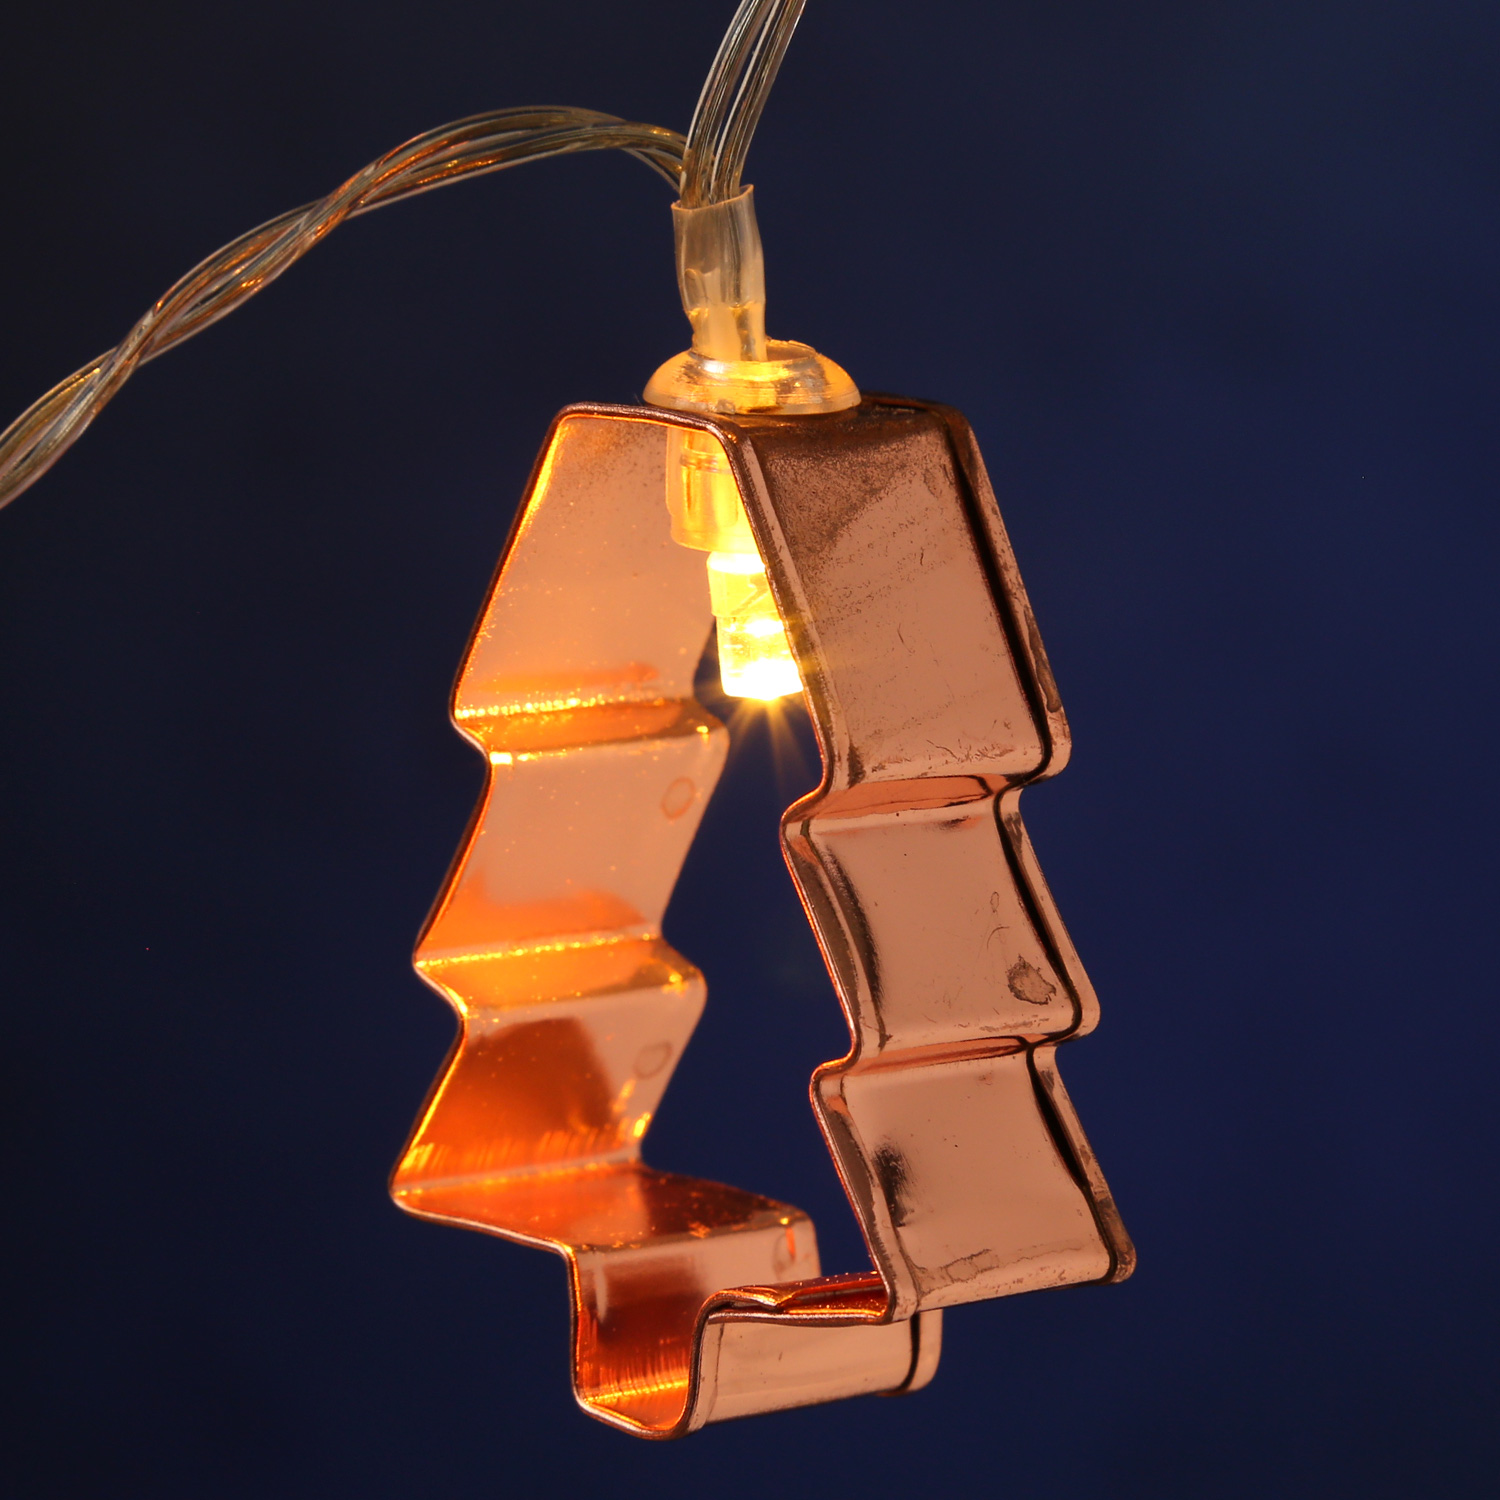 LED Lichterkette mit kupferfarbenen Baum Backförmchen - 8 warmweiße LED - Batteriebetrieb - L: 1,4m